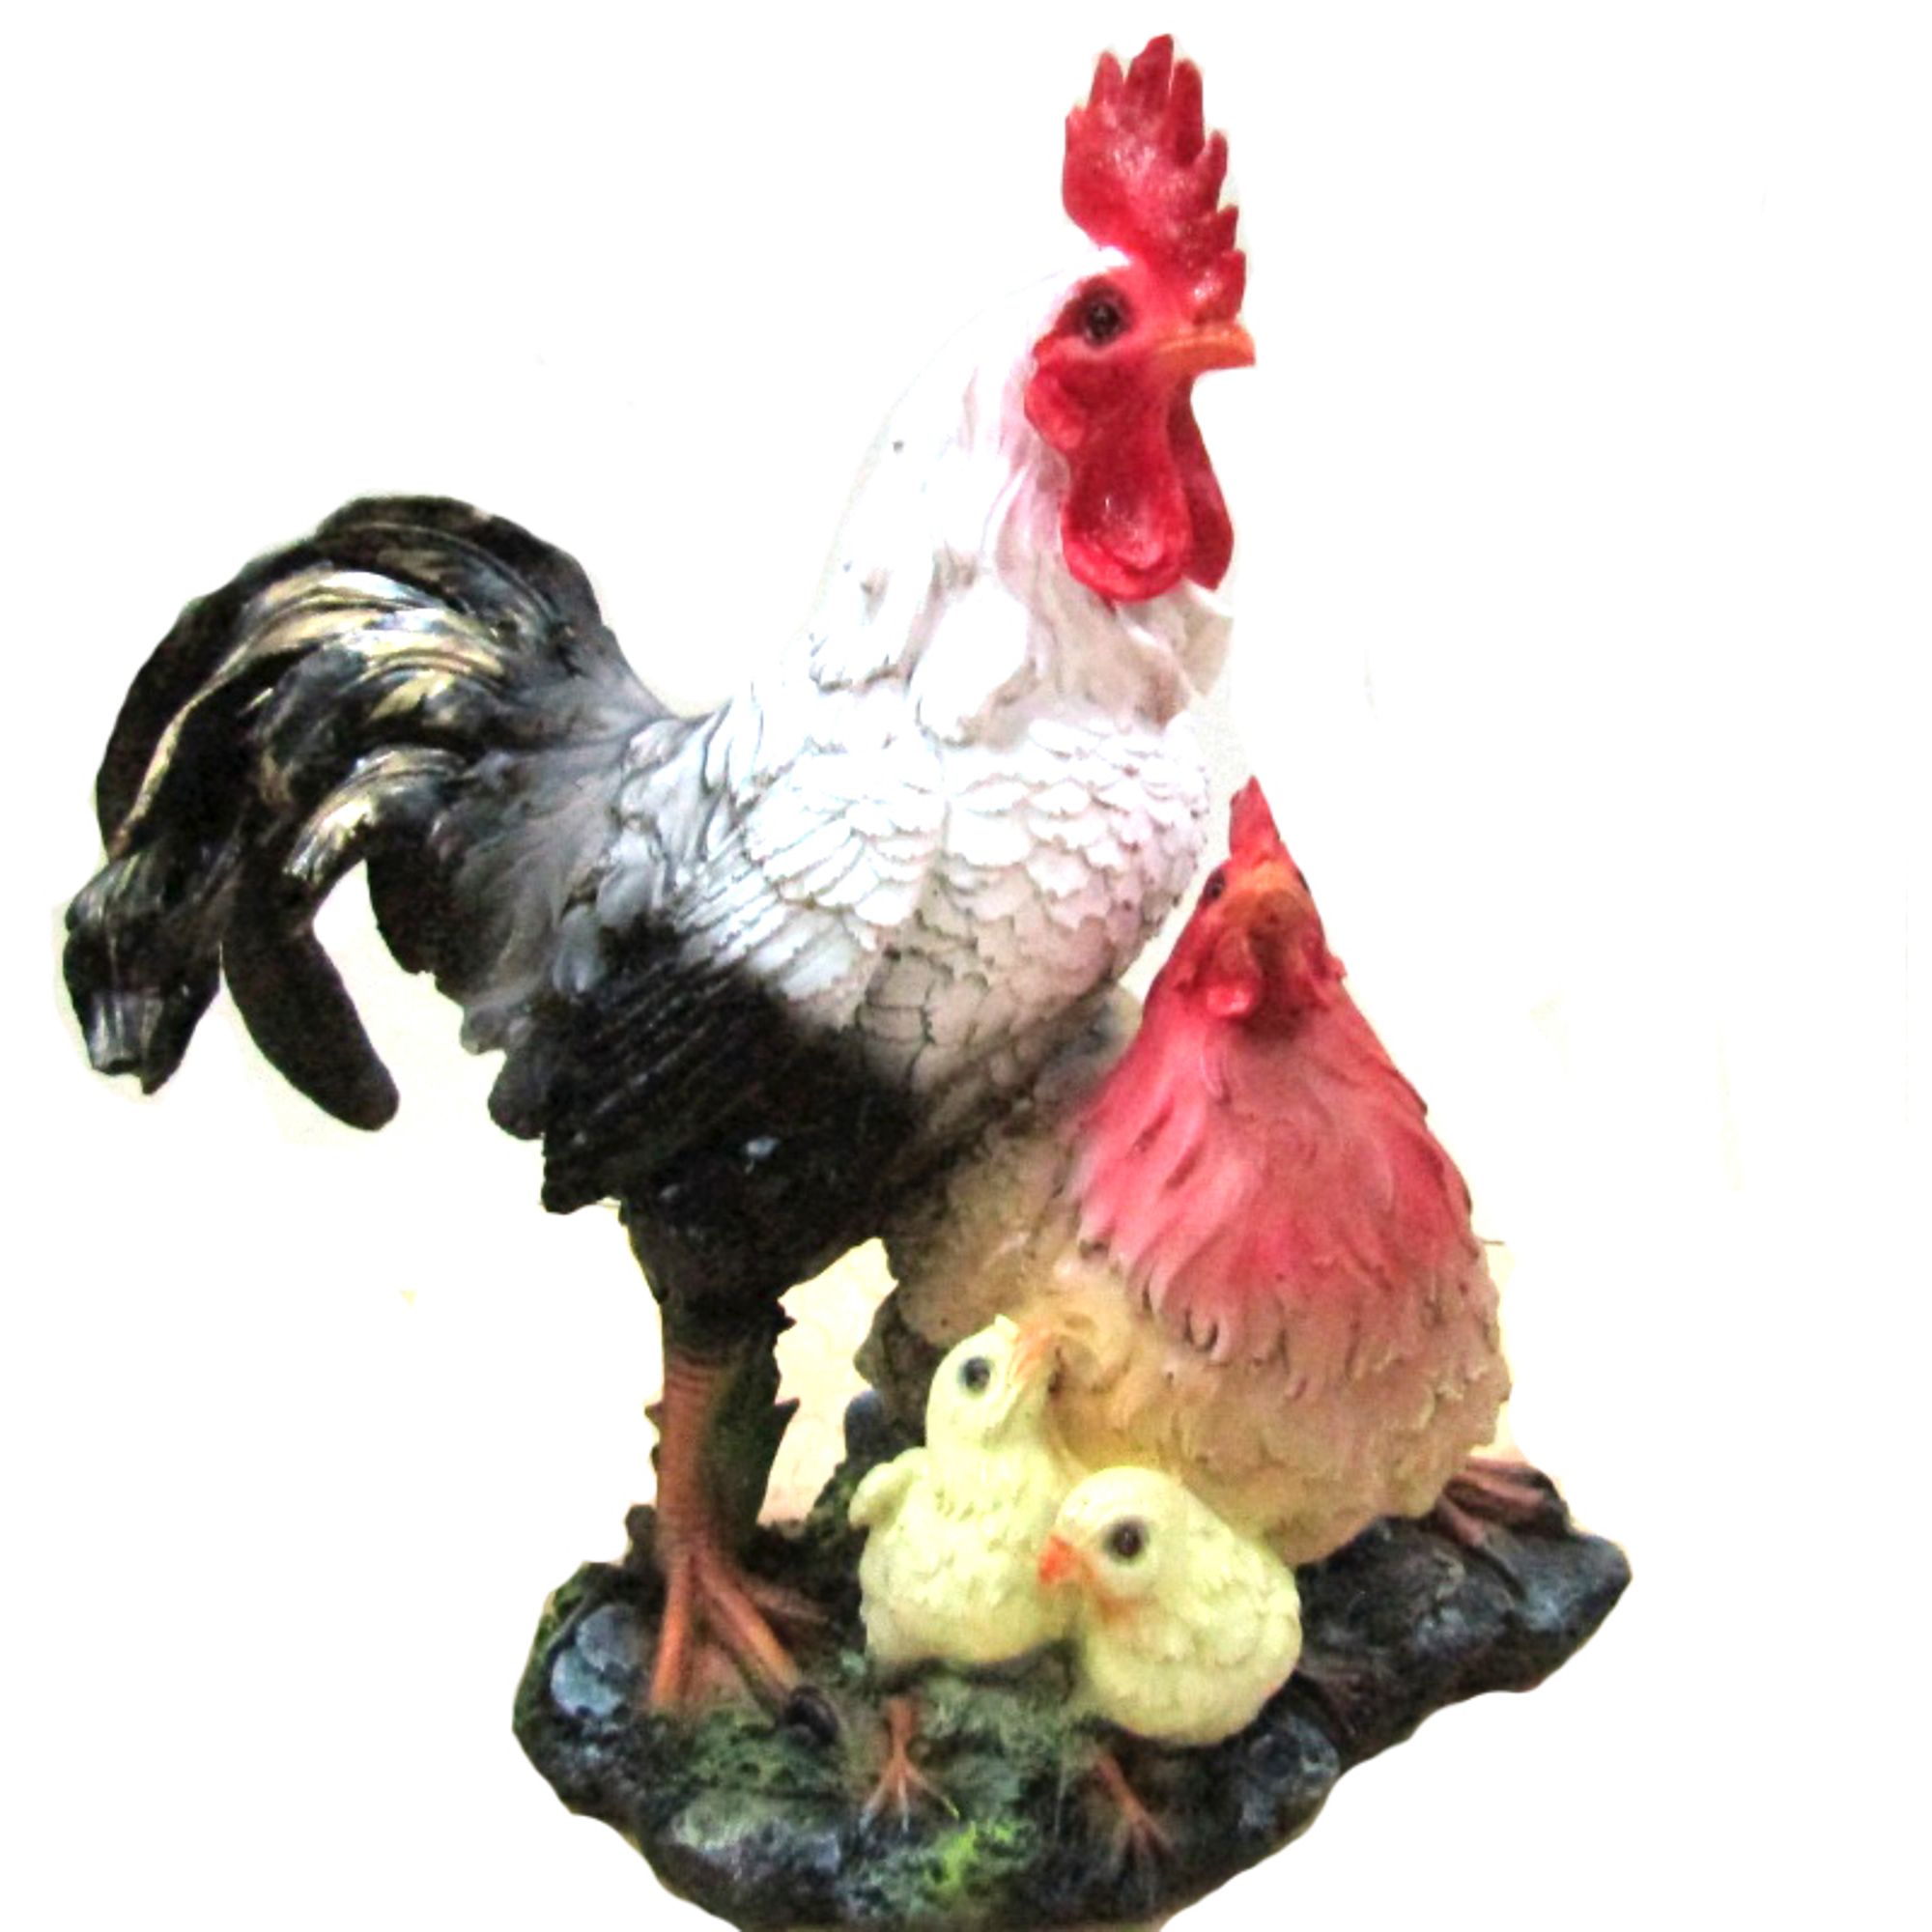 фигура садовая тпк полиформ петух испанский 53 см Фигура садовая Петух с цыплятами н26.l24 Тпк полиформ